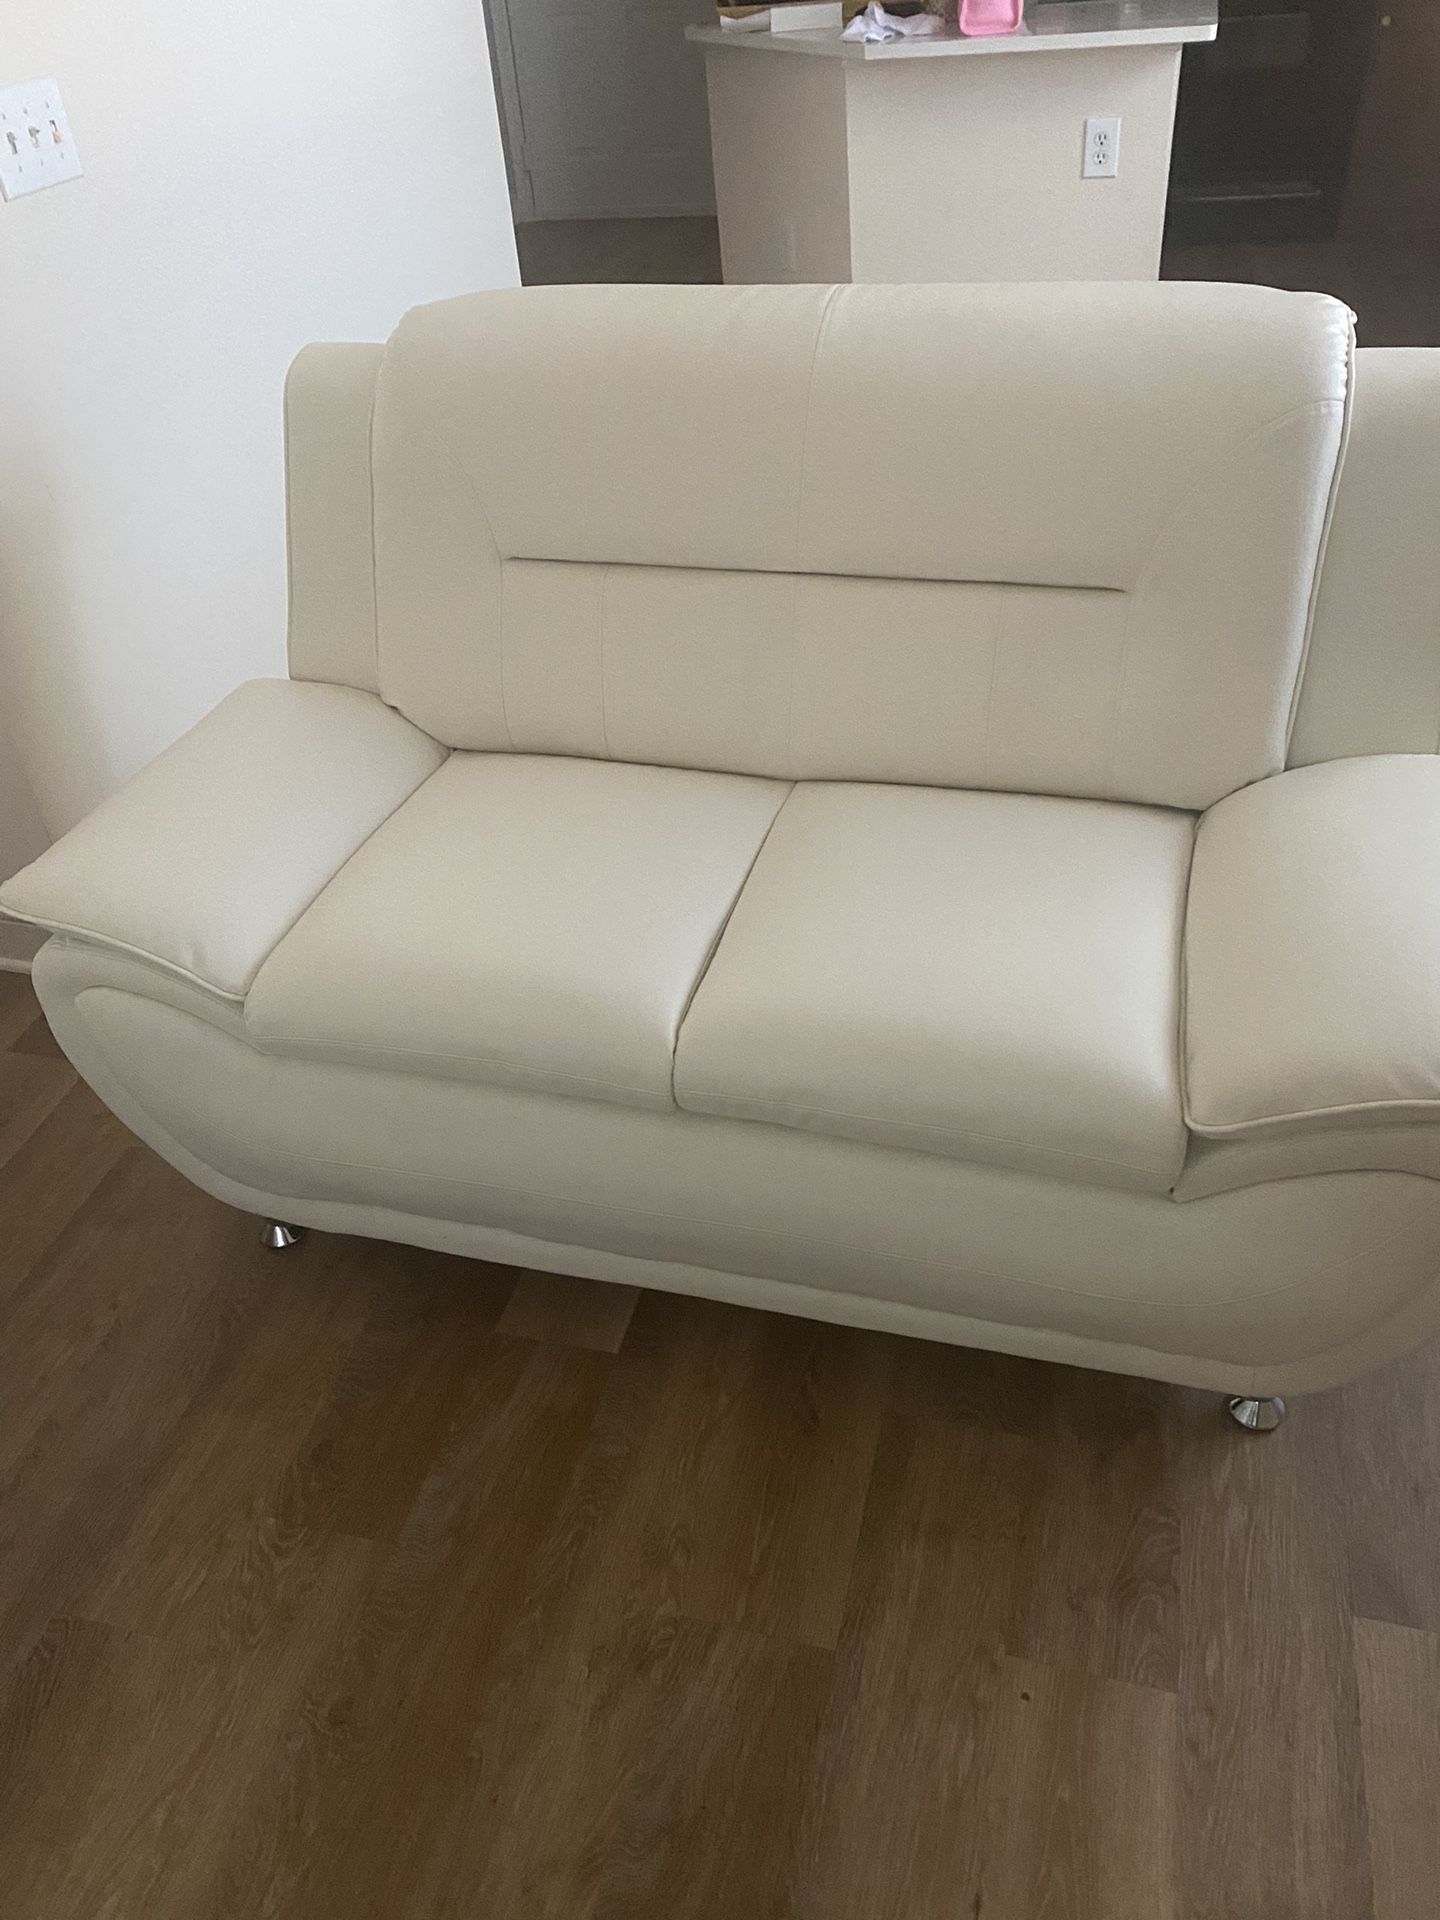 Modern Cream Couch Set